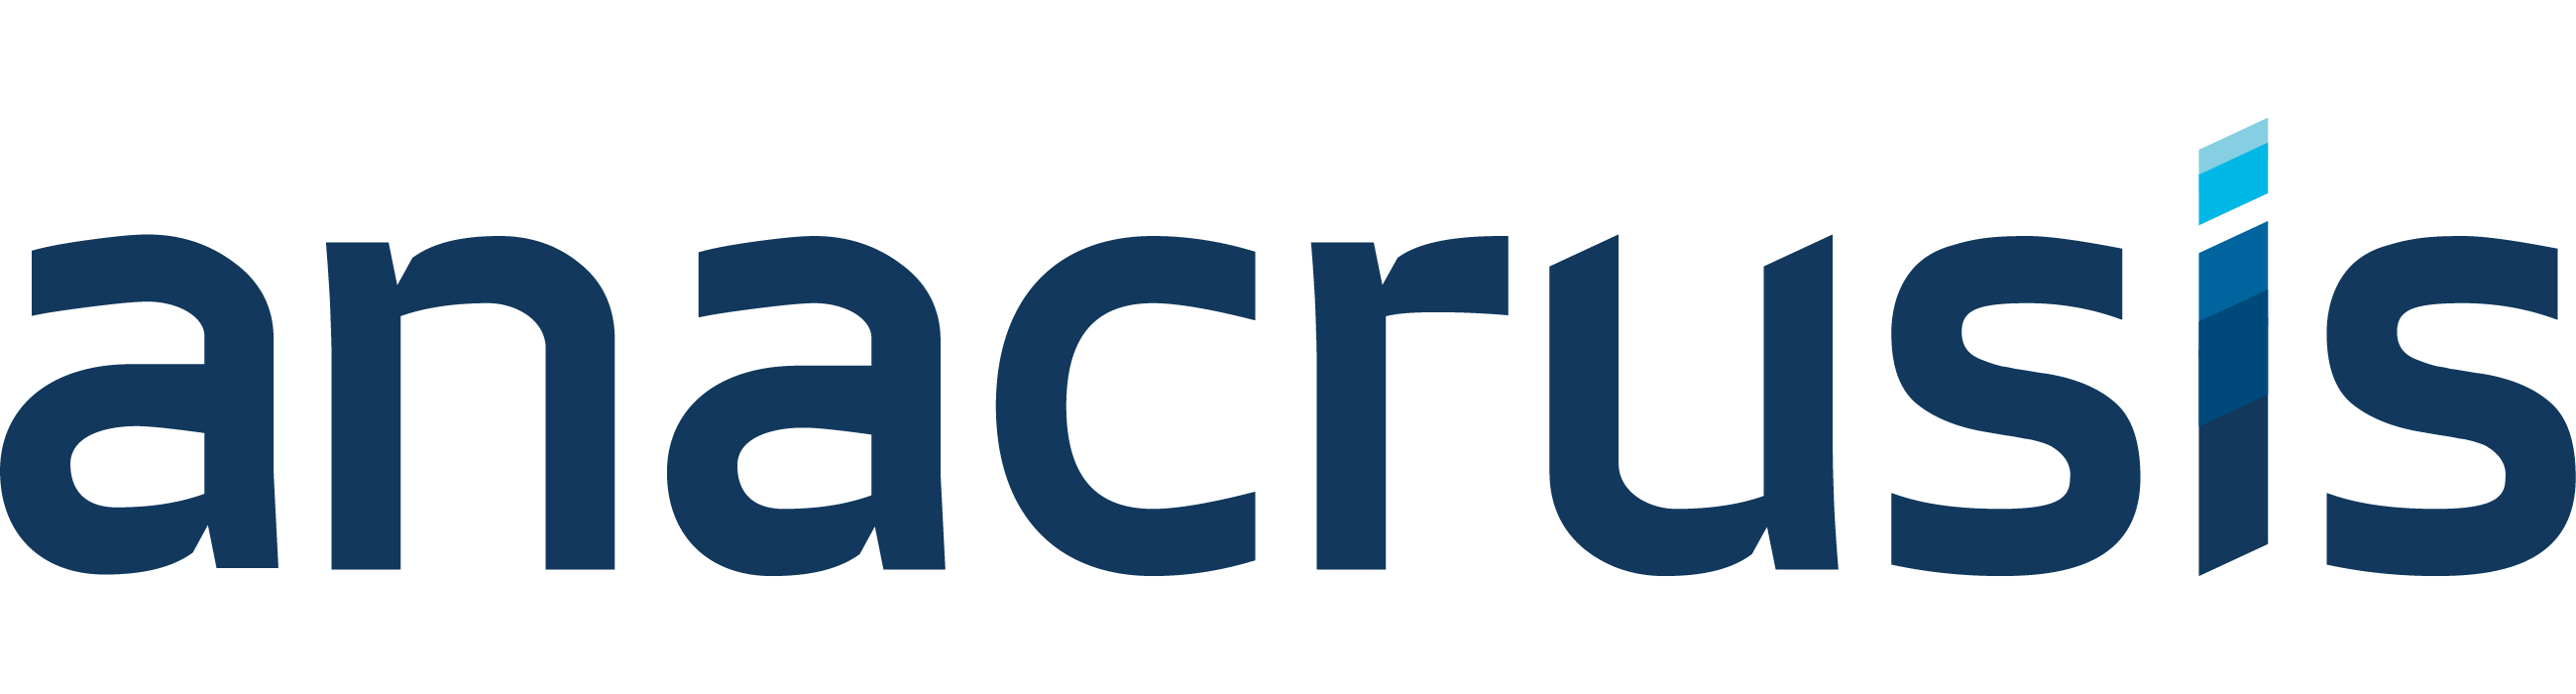 Anacrusis Ltd logo